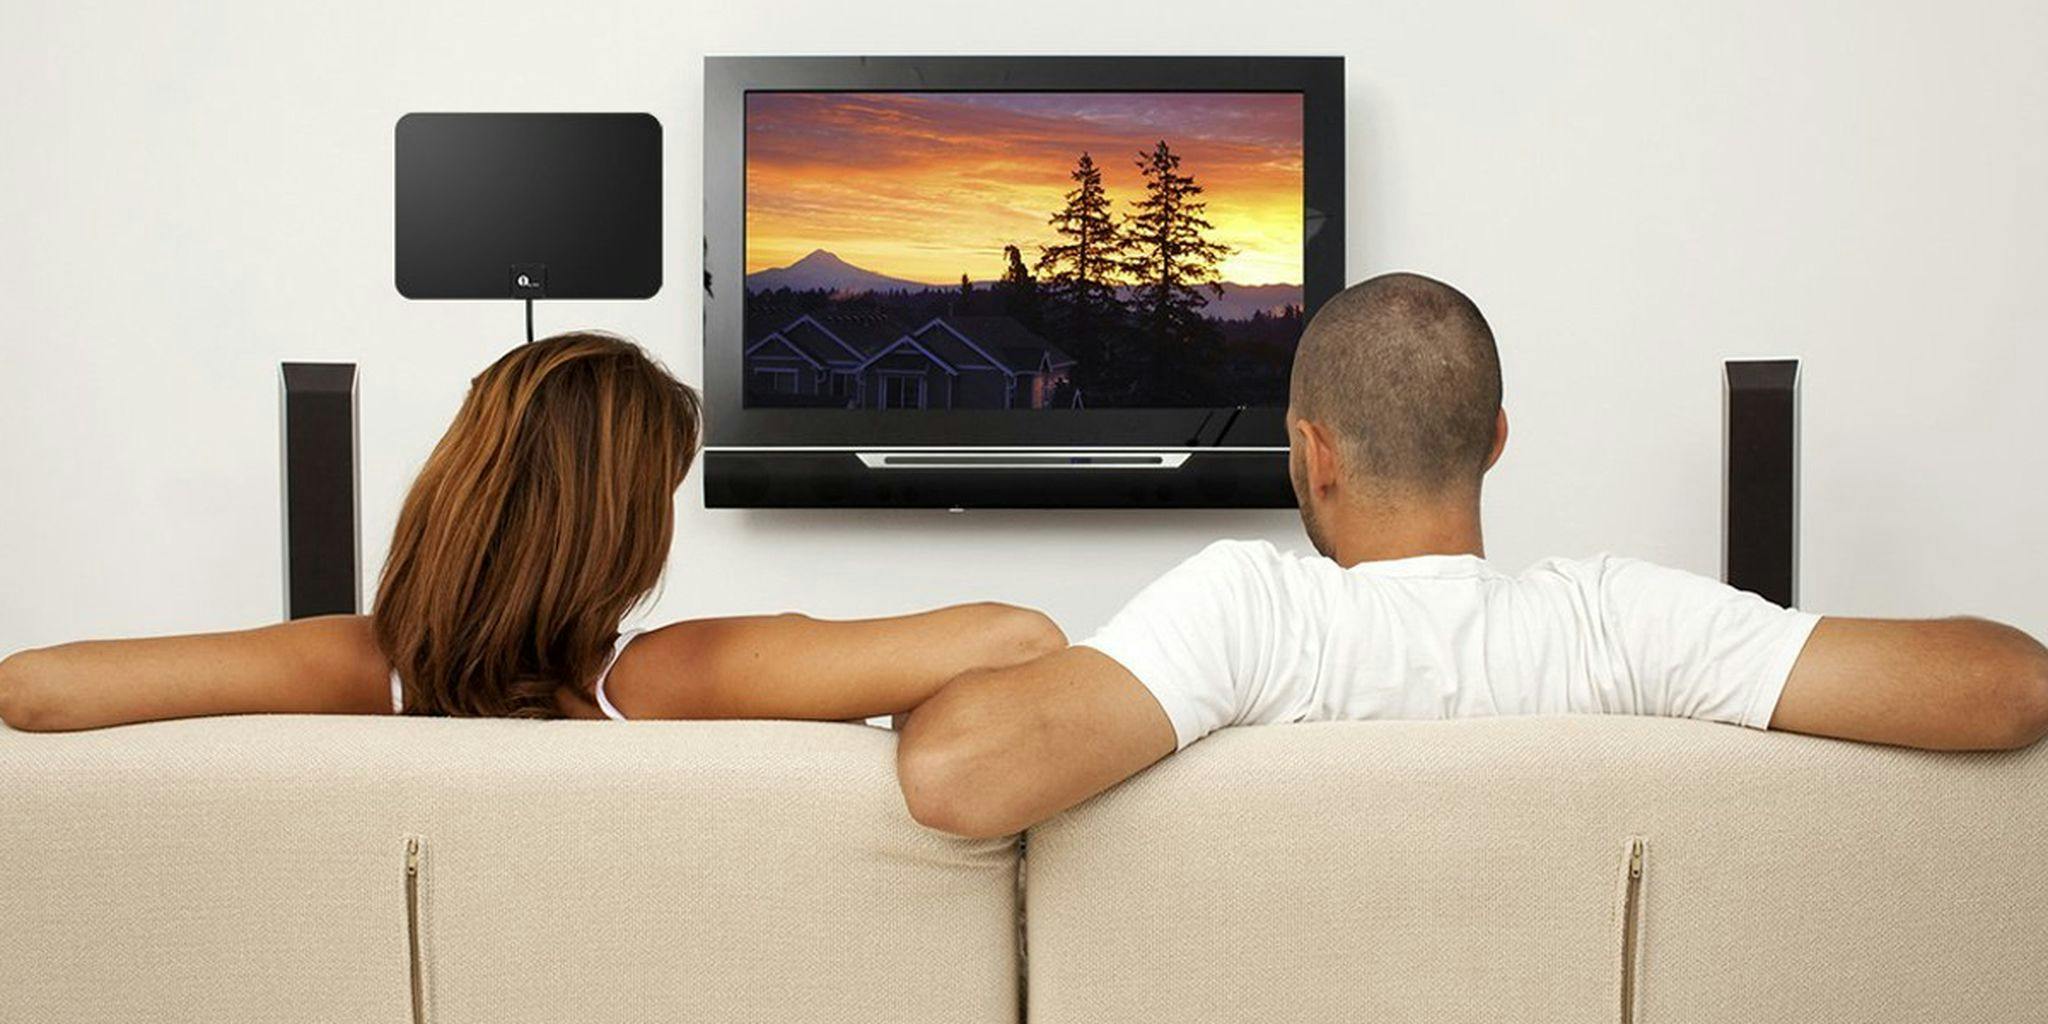 Громко смотрит телевизор. Человек перед телевизором. Телевизор со спины. Человек сидит перед телевизором. Мебель перед телевизором.